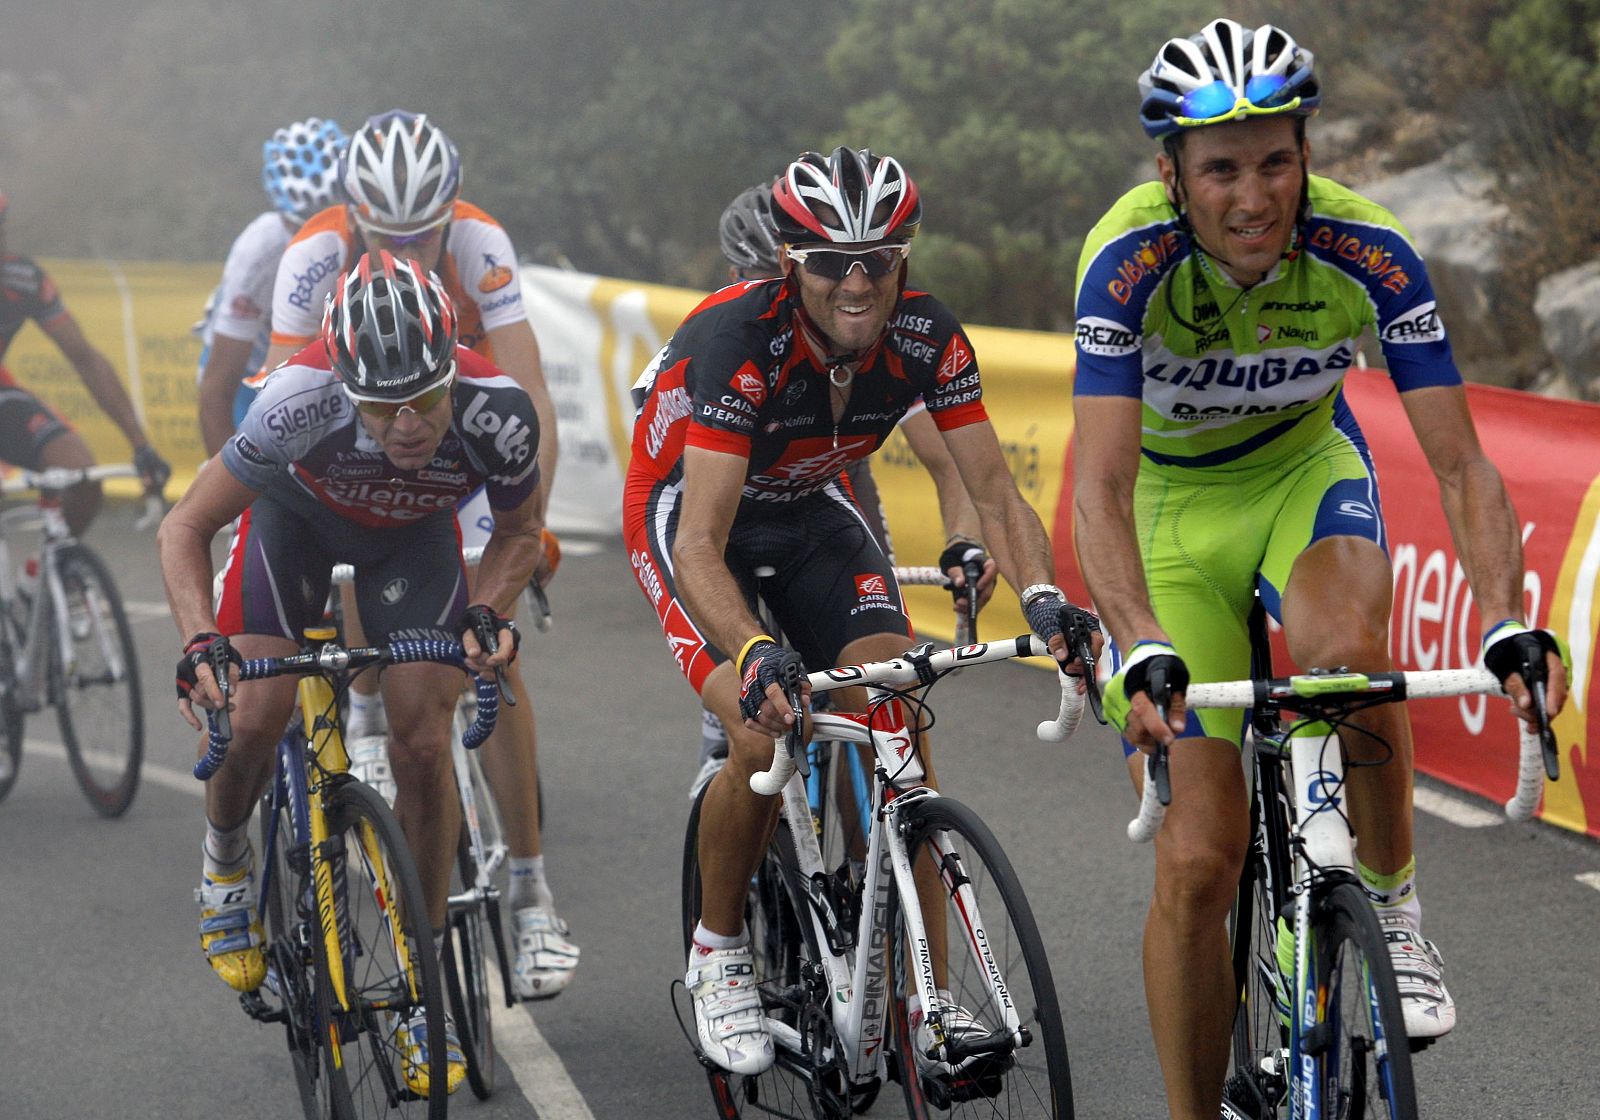 Evans, tras Valverde y Basso, en un momento de la etapa.